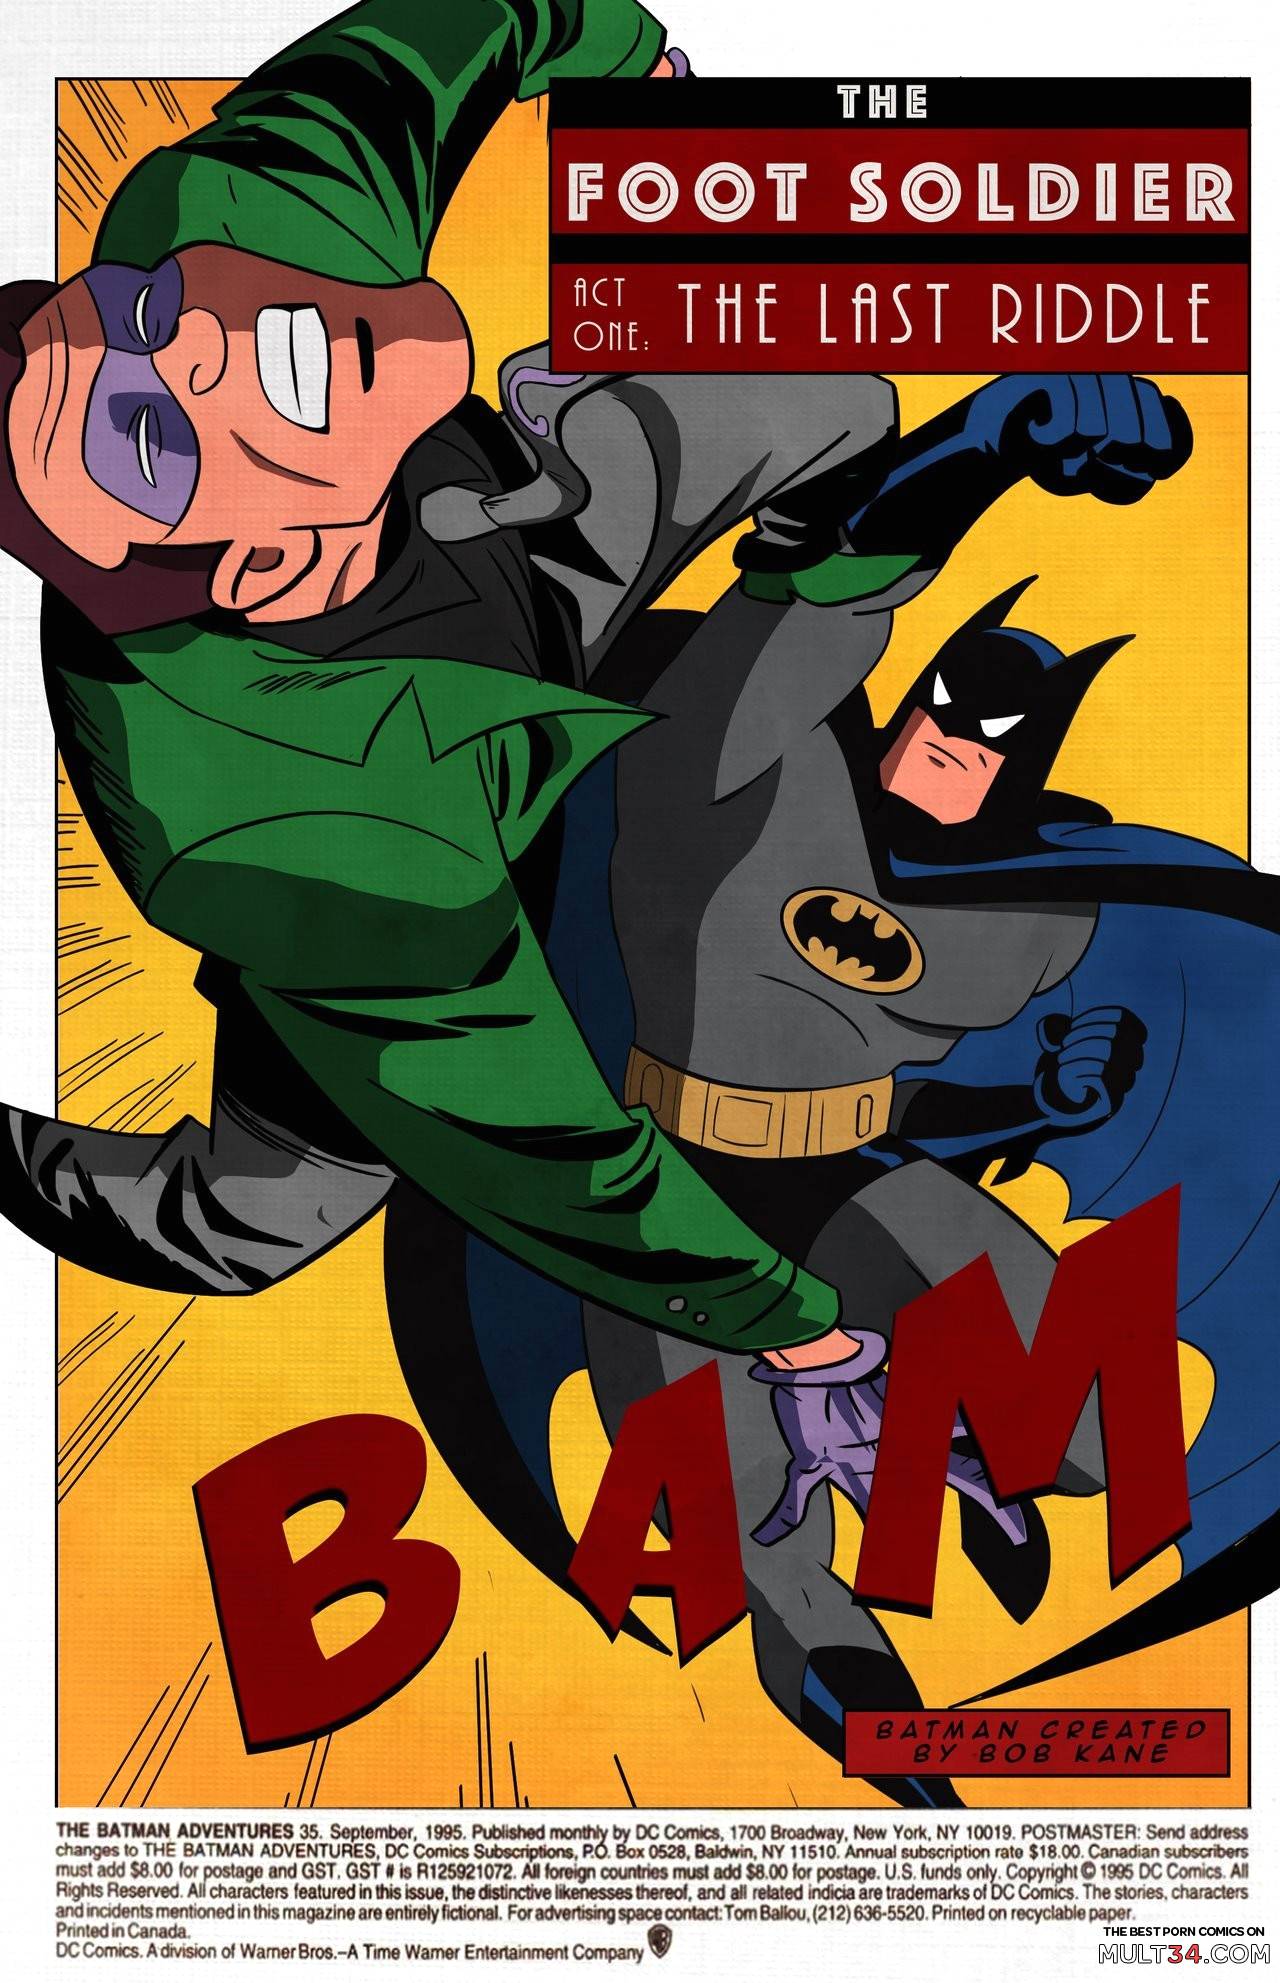 Batman Trains Robin Porn - Batman - The Foot Soldier gay porn comic - the best cartoon porn comics,  Rule 34 | MULT34